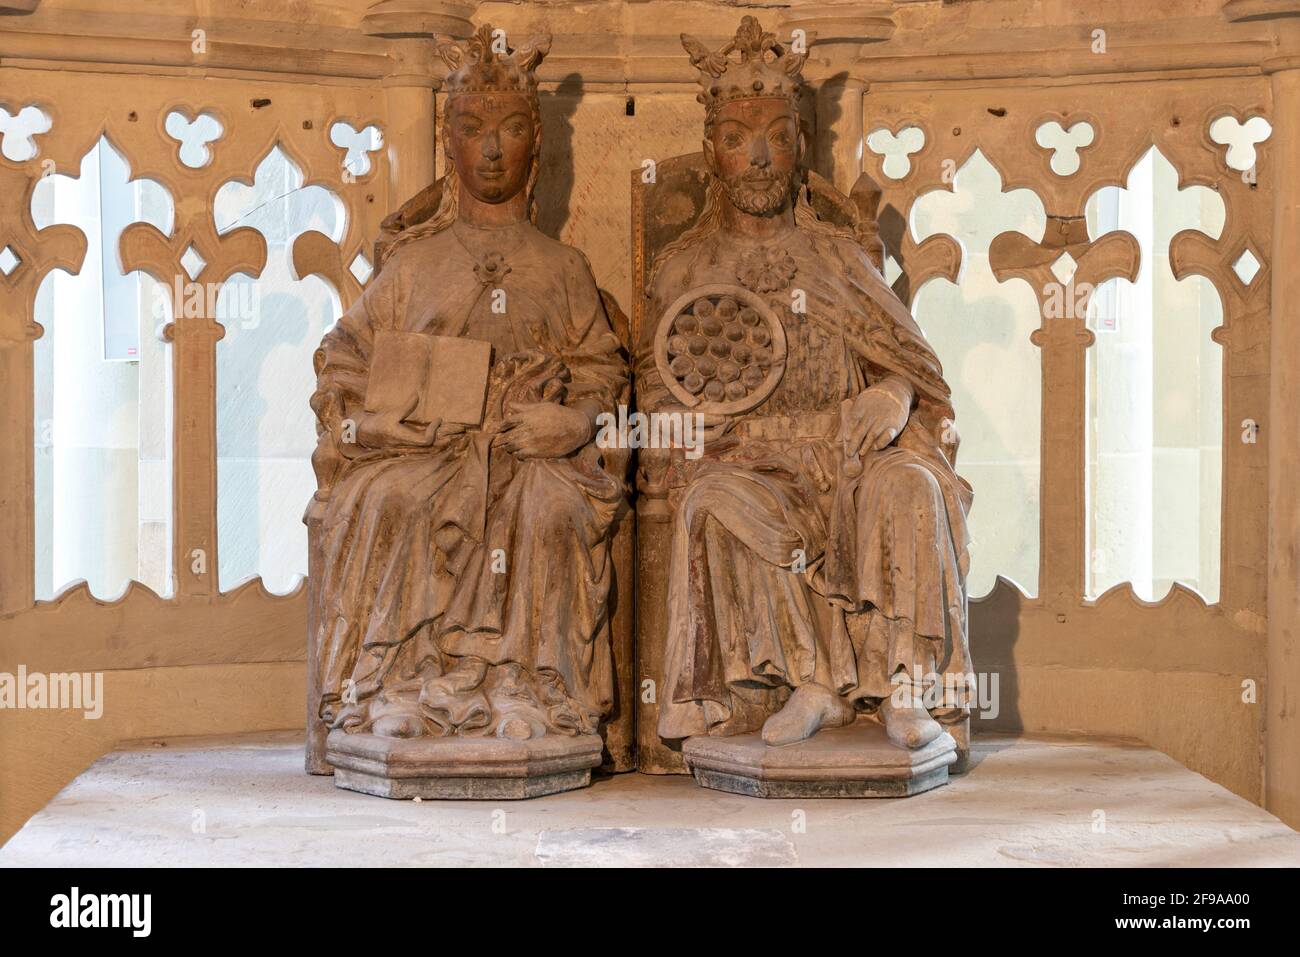 Deutschland, Sachsen-Anhalt, Magdeburg, Herrscherpaar in der Grabeskapelle, interpretiert als Königin Editha und Kaiser Otto, Magdeburger Dom Stockfoto